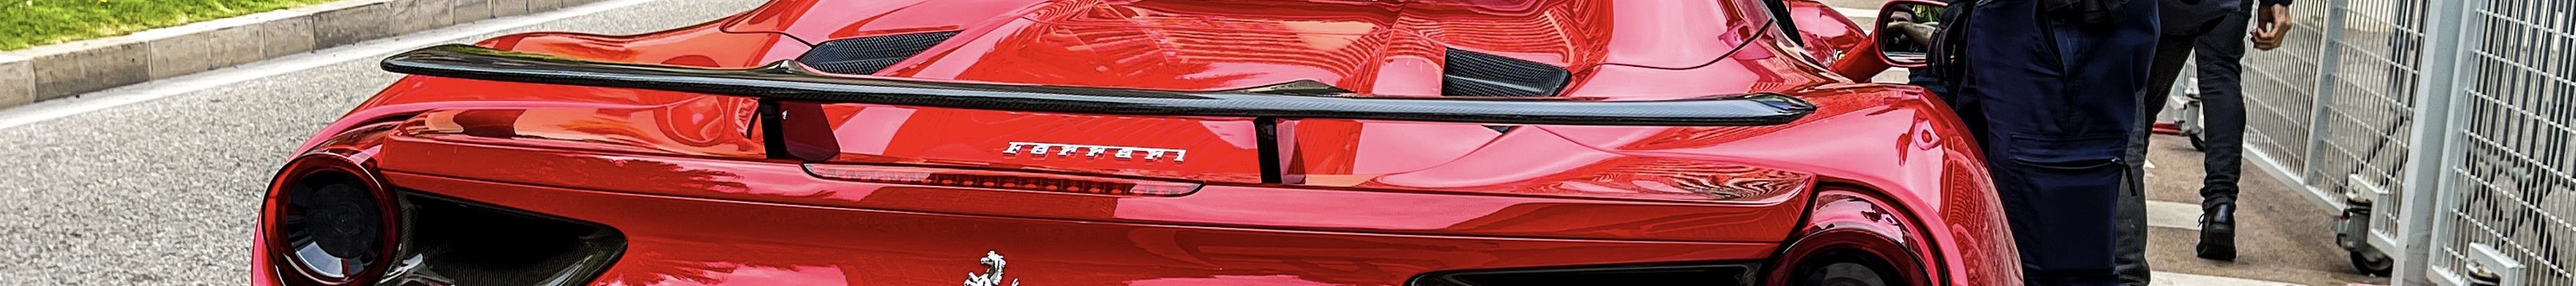 Ferrari 488 Spider Novitec Rosso